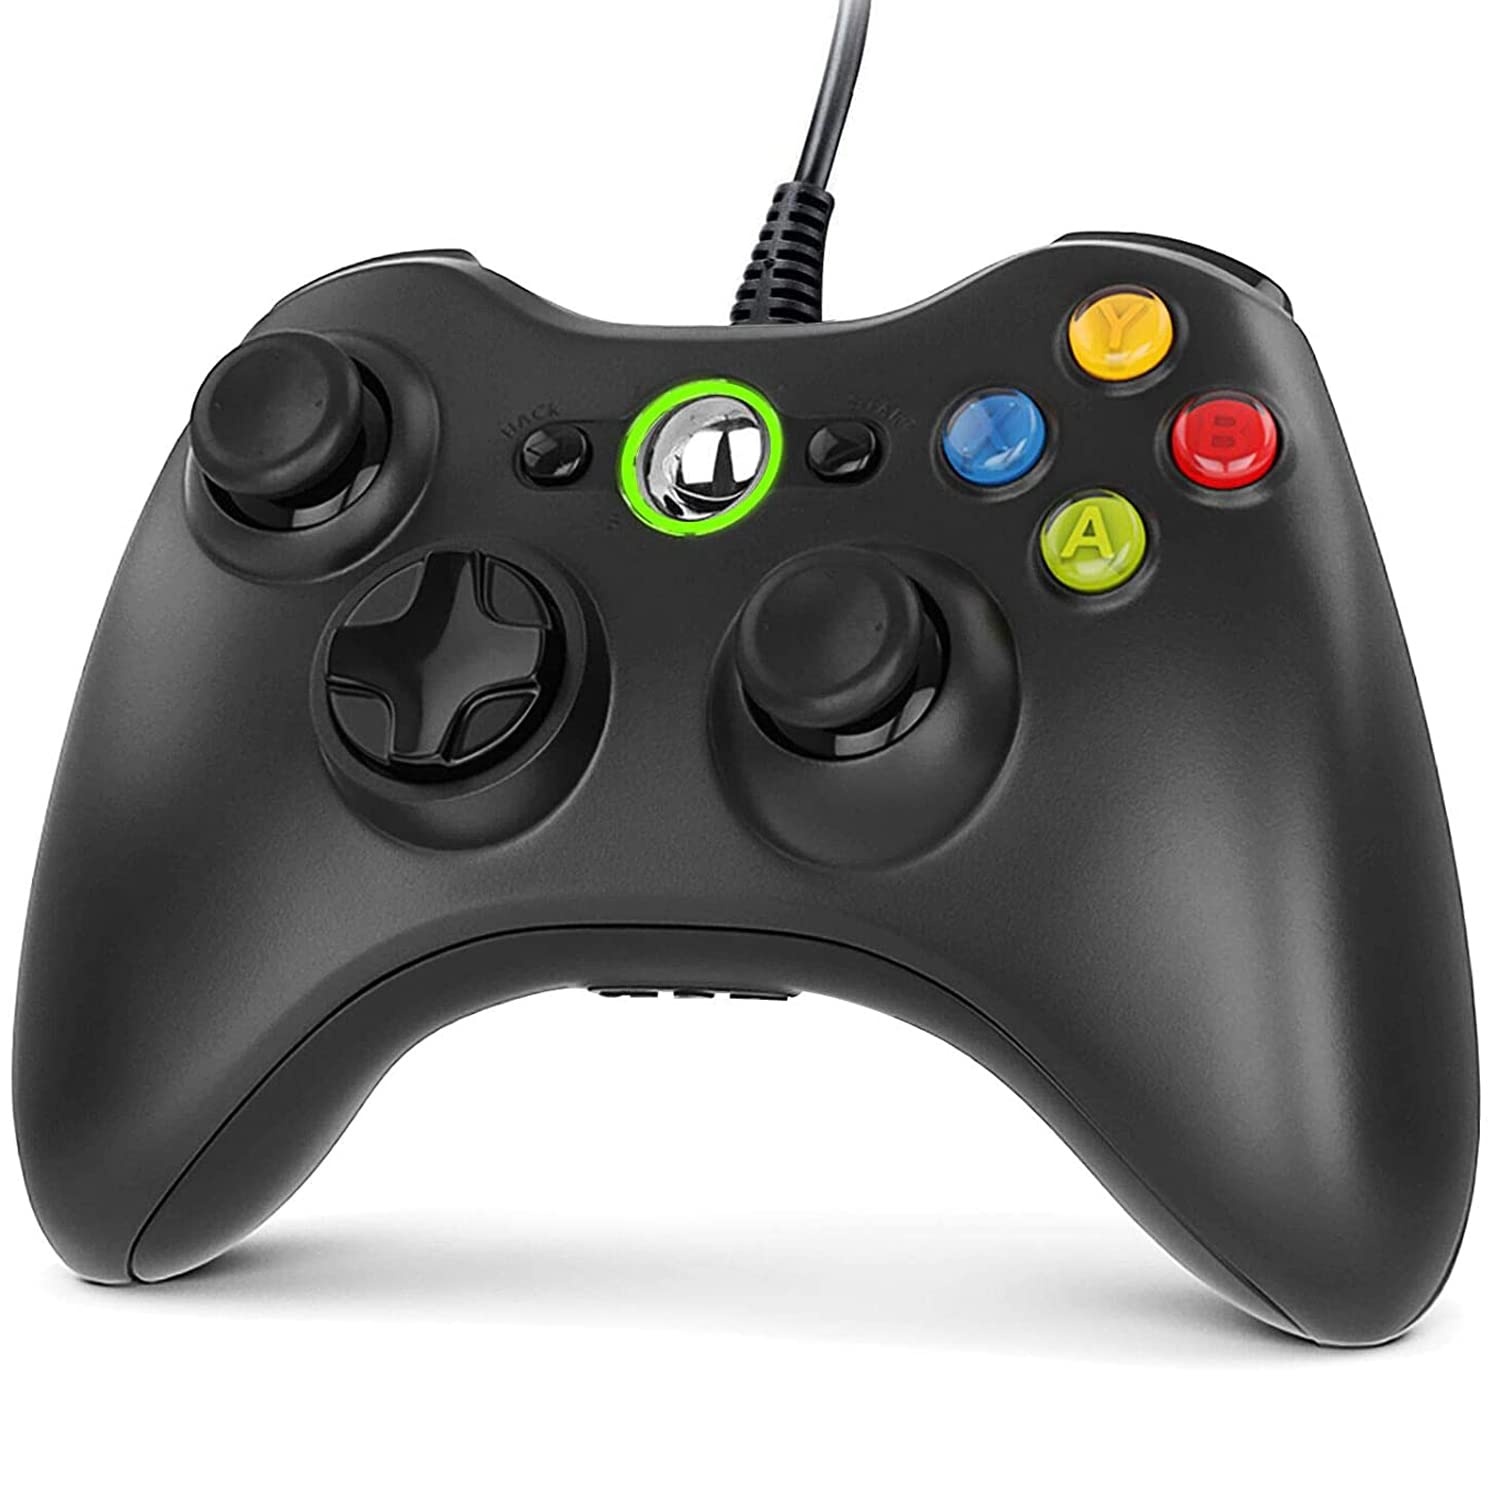 Gezimetie Controller für Xbox 360, Gamepad Joystick mit USB Kabel, Wired Gamepad für Microsoft Xbox 360 und Xbox 360 Slim/Windows PC(Windows 7/8/8.1/10/XP/Vista)